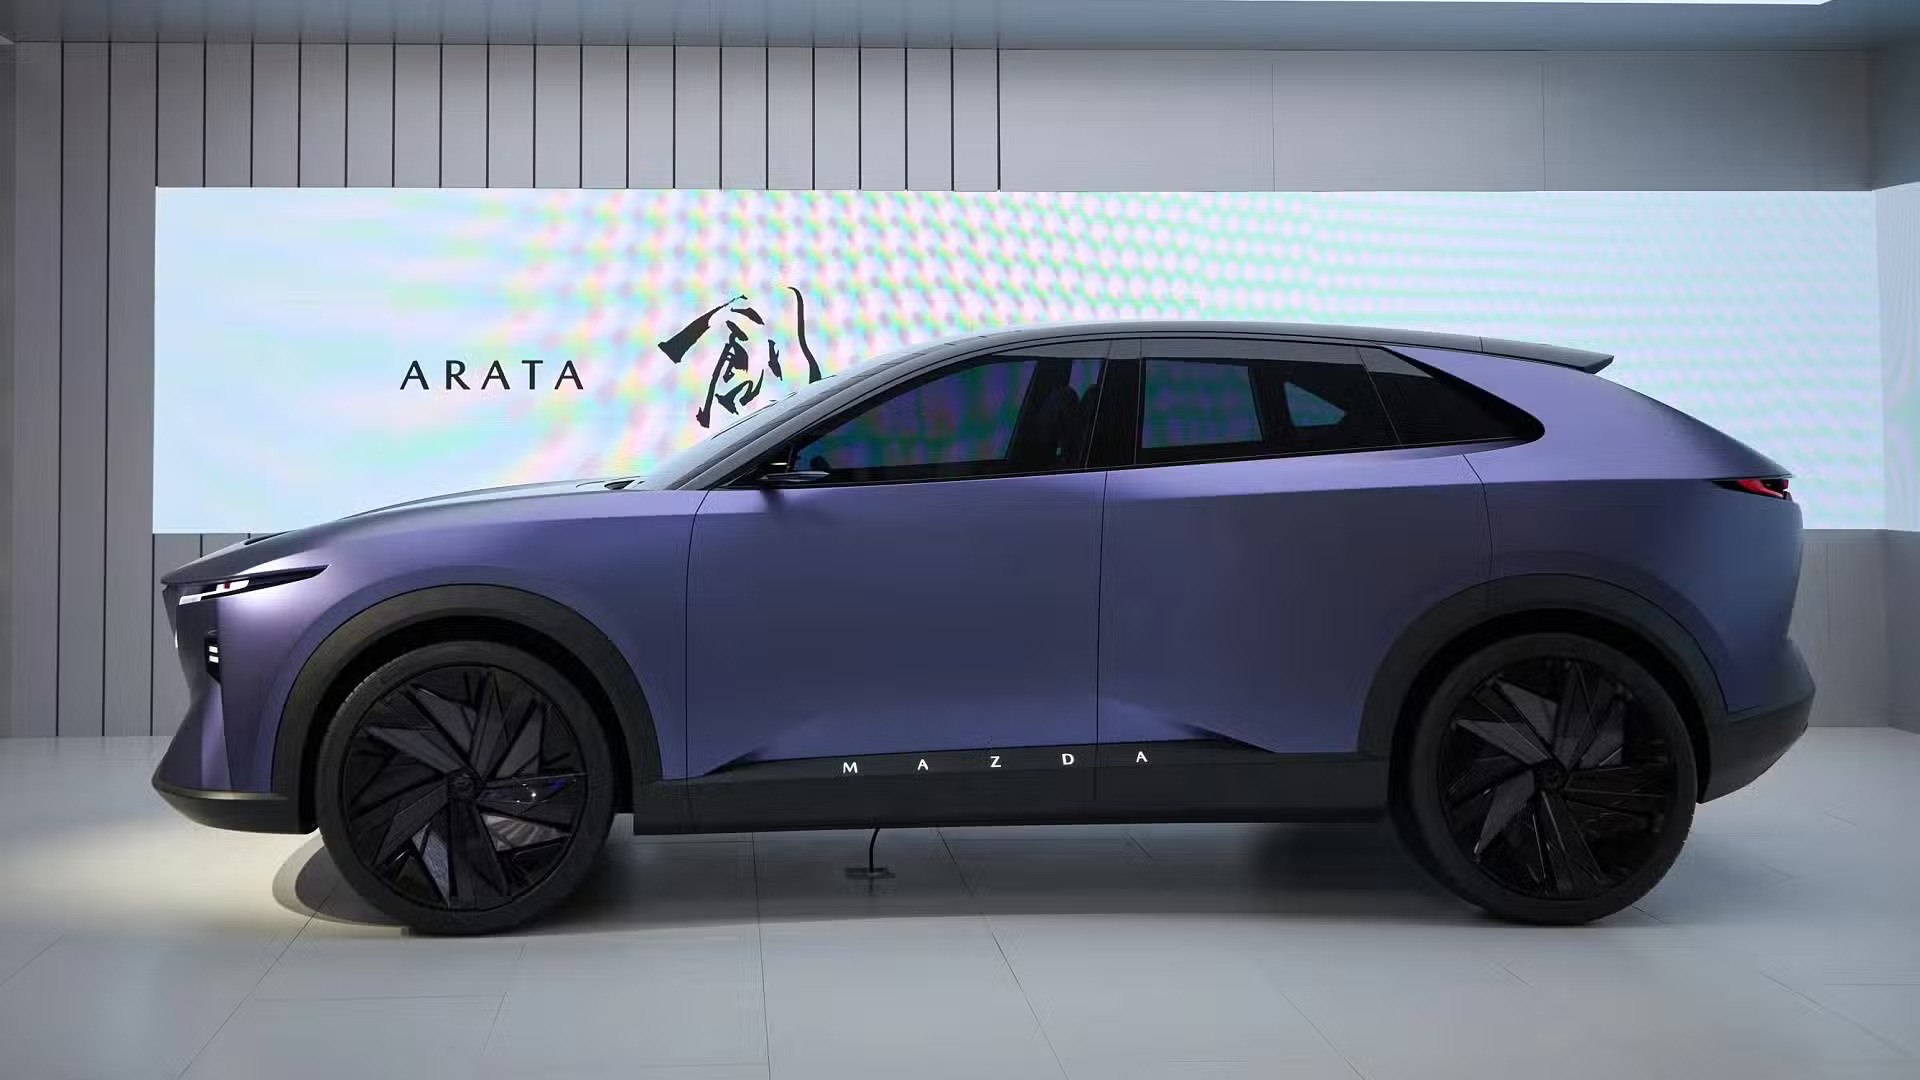 Ra mắt Mazda Arata Concept - SUV thuần điện ngang cỡ Mazda CX-5, chạy hơn 600km/sạc- Ảnh 5.